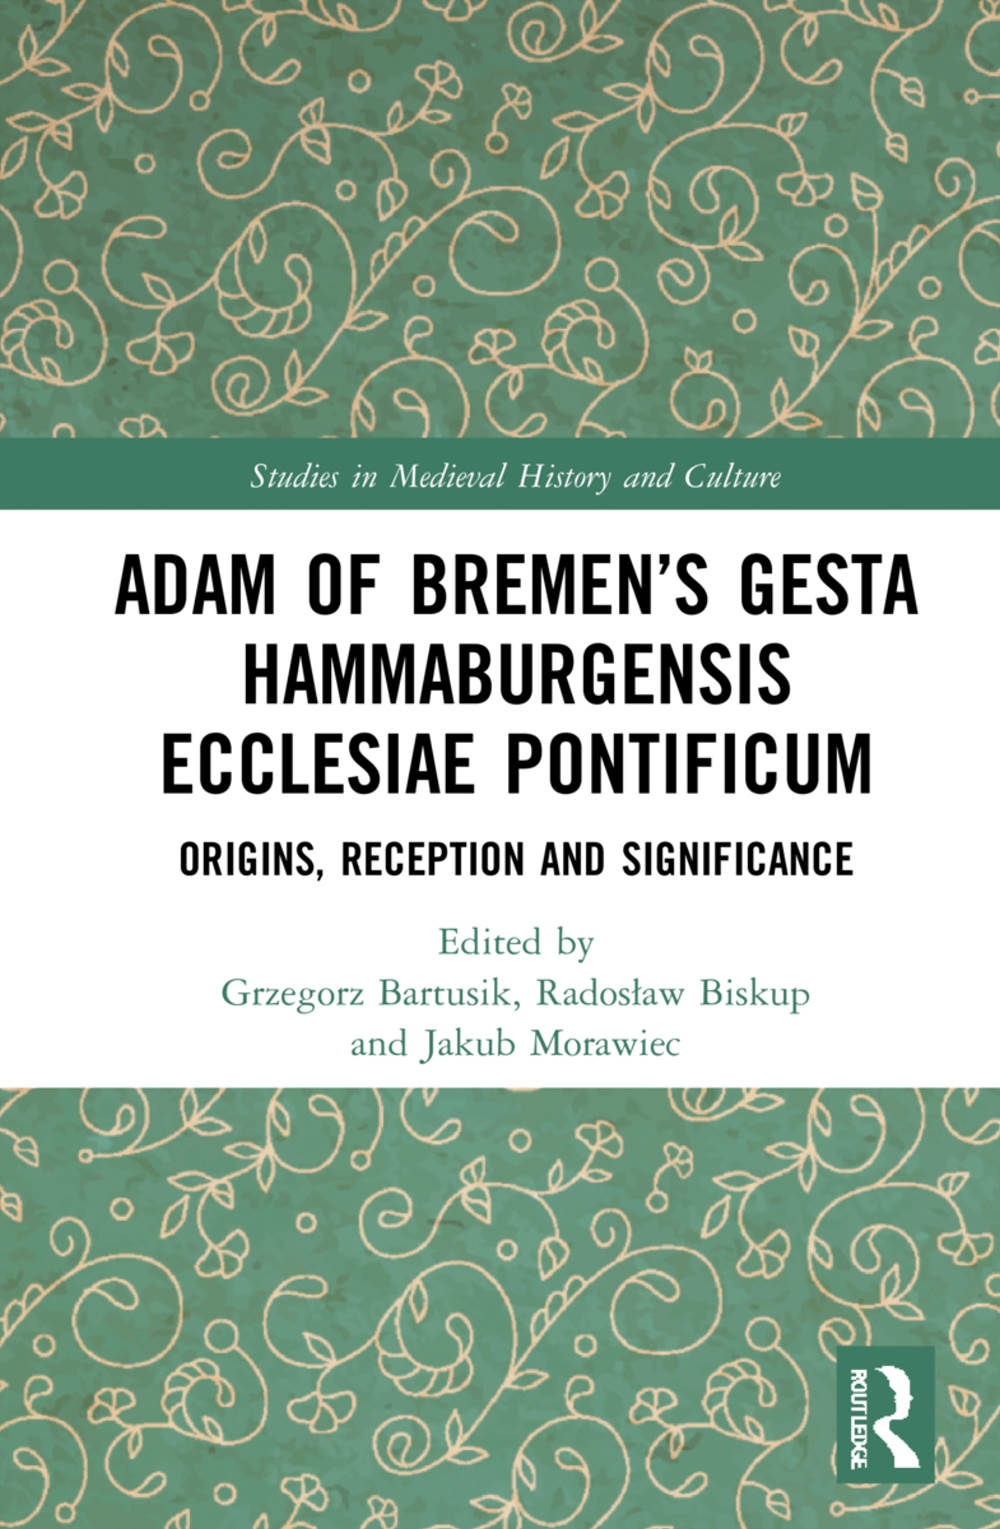 Adam of Bremen’s Gesta Hammaburgensis Ecclesiae Pontificum: Origins, Reception and Significance